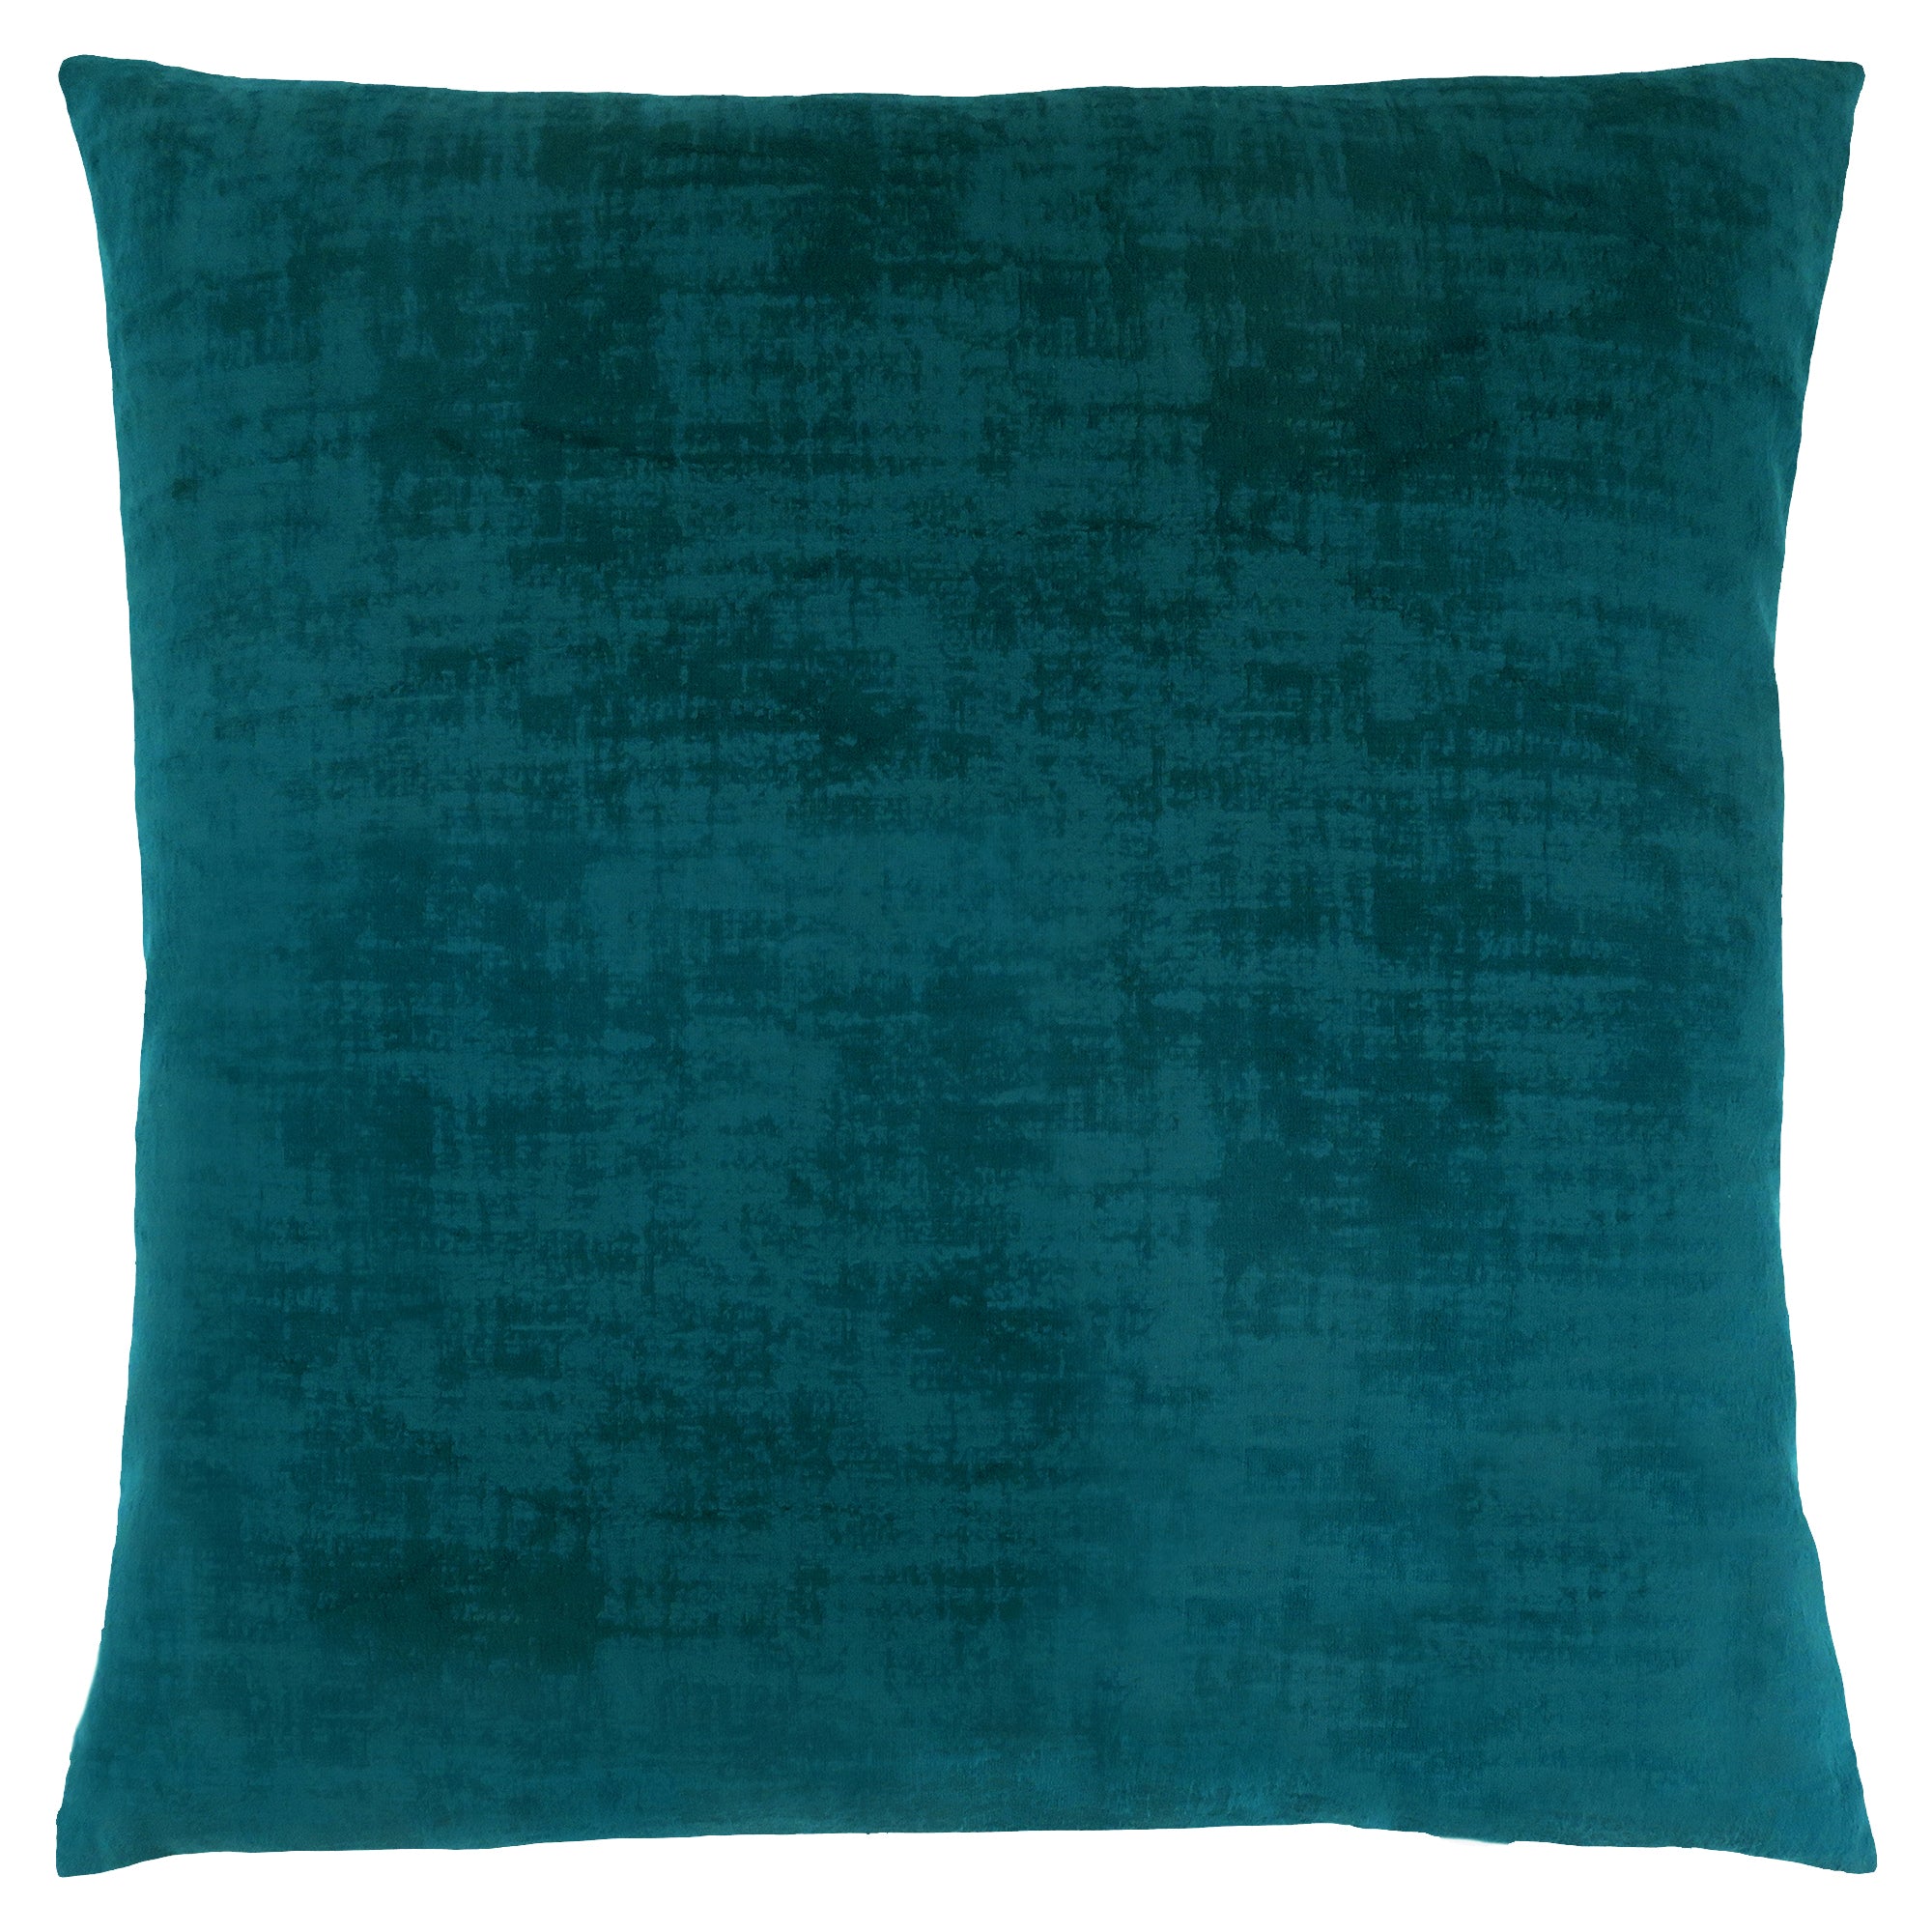 Pillow - 18X 18 / Turquoise Brushed Velvet / 1Pc